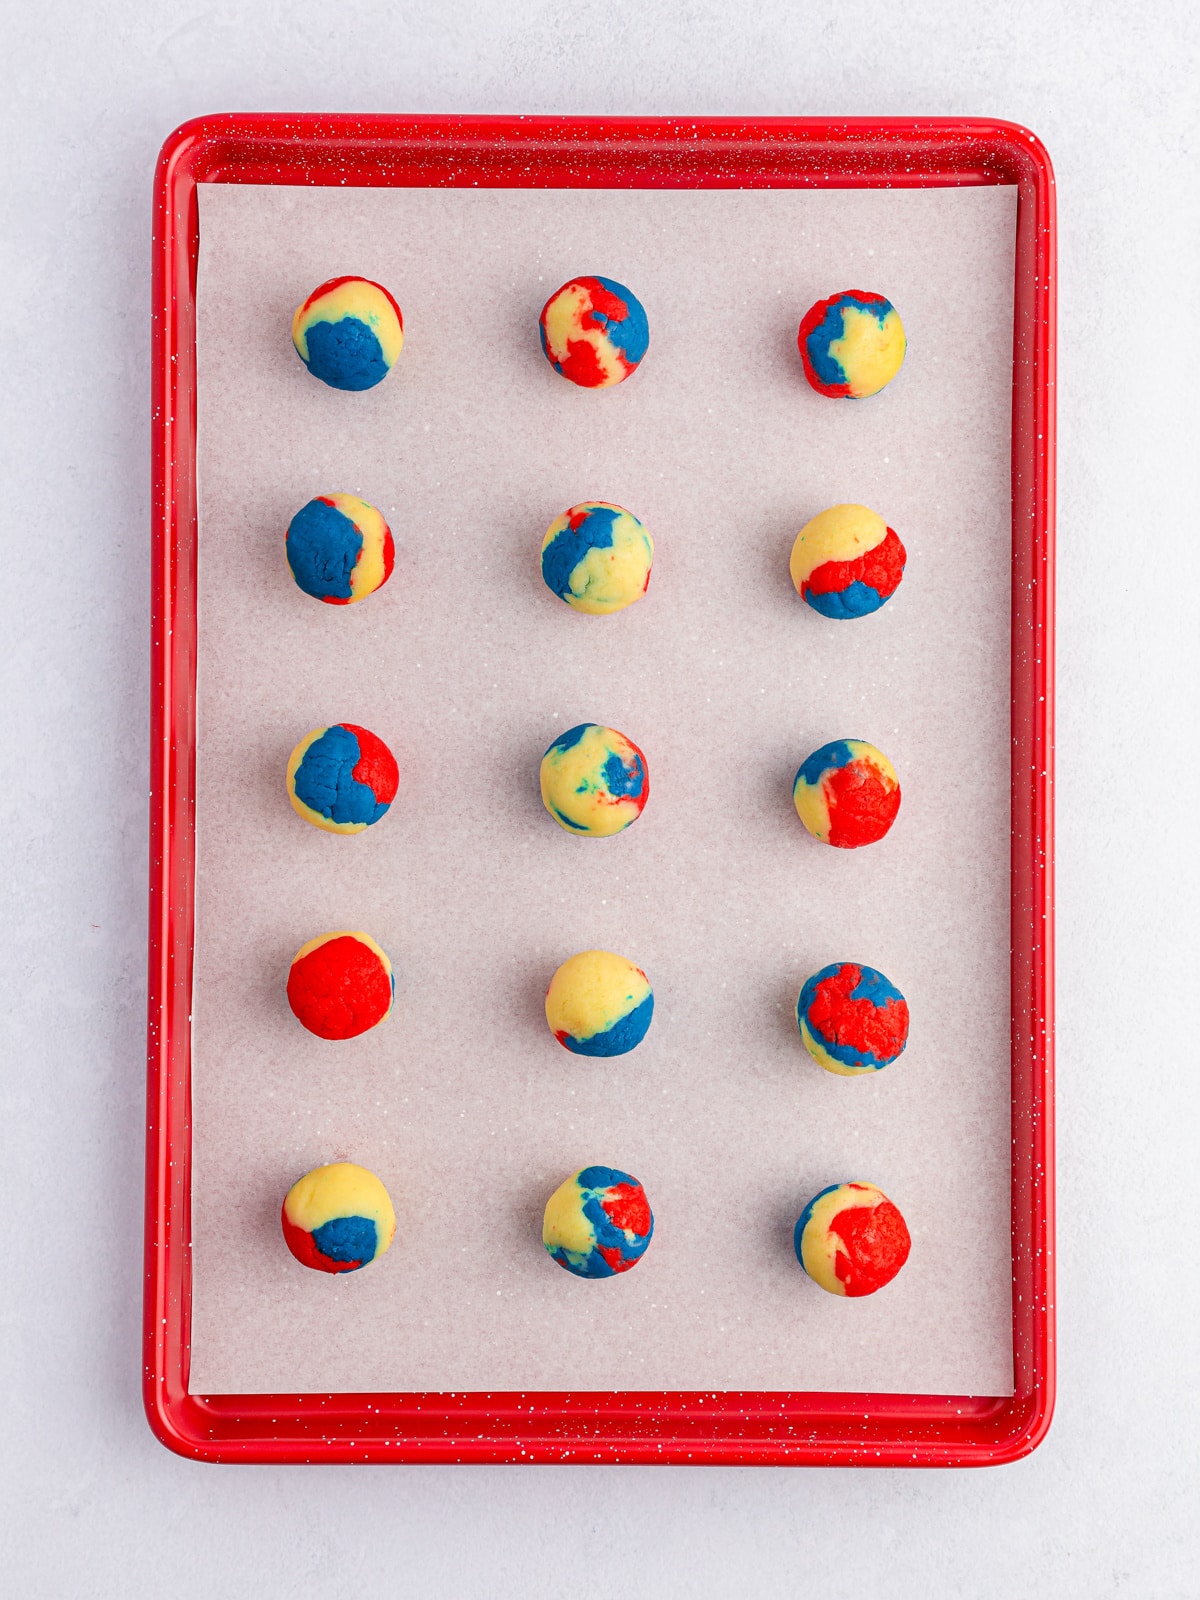 Patriotic Cake Balls on baking sheet